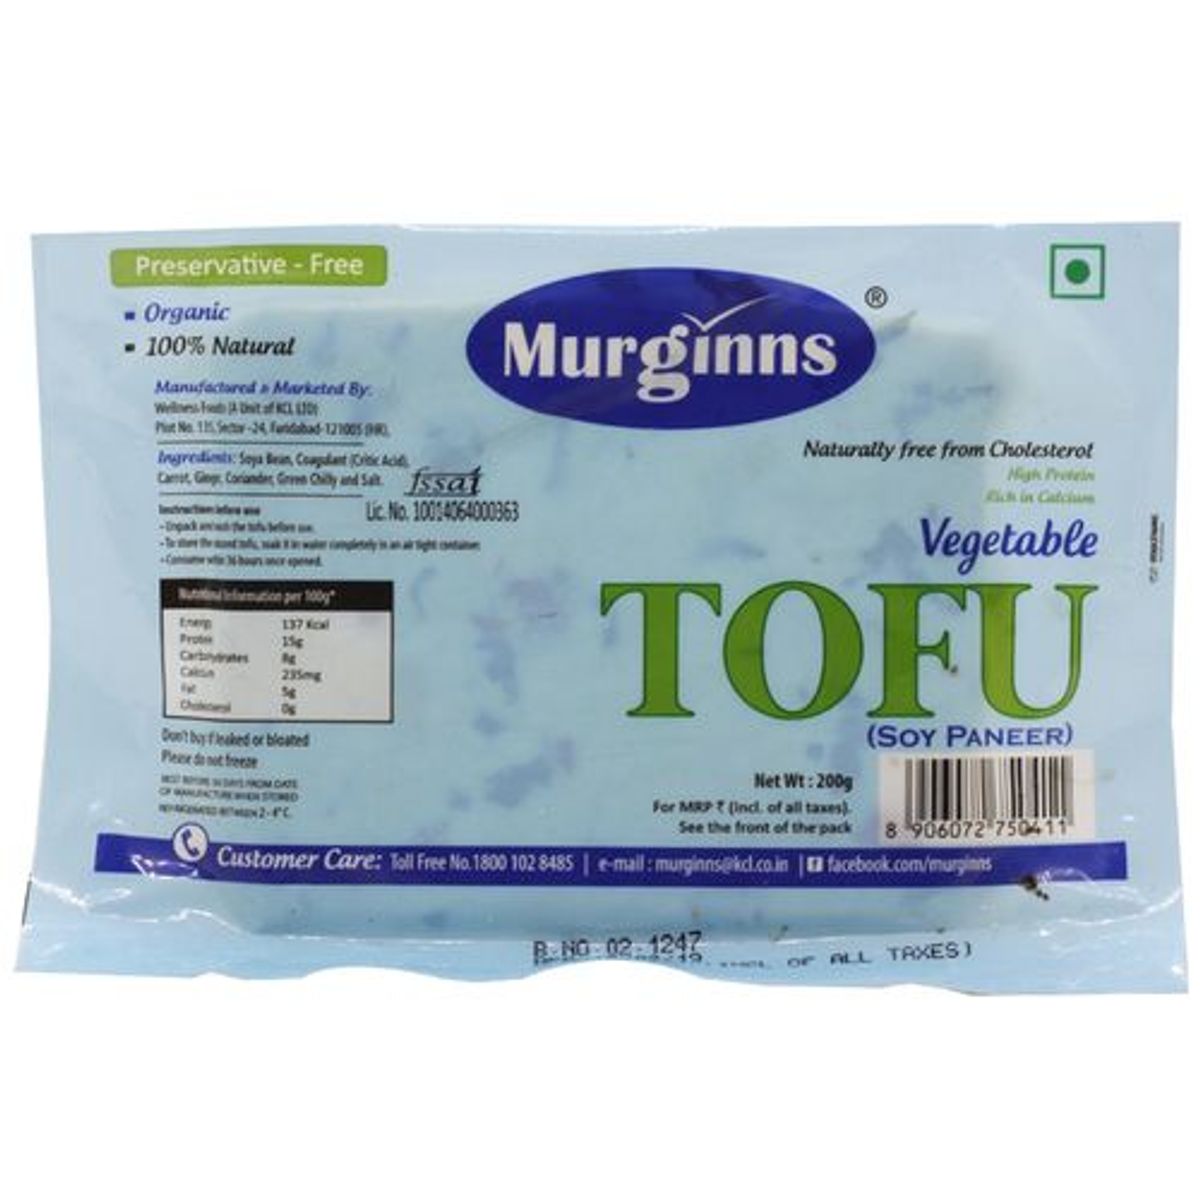 Murginns Organic Vegetable Tofu Soy Paneer Image